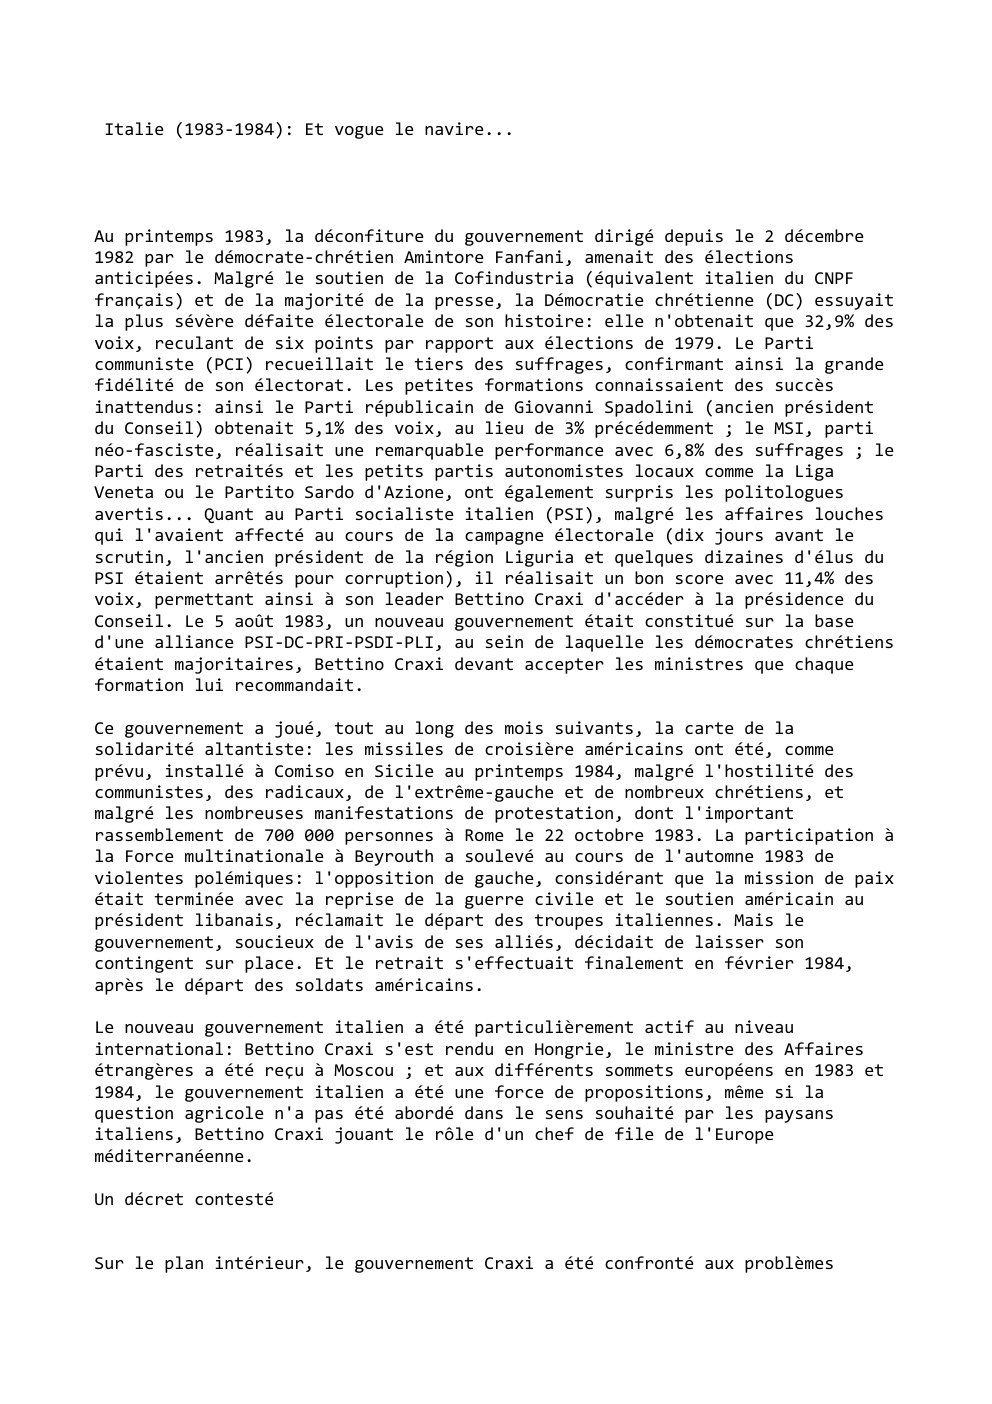 Prévisualisation du document Italie (1983-1984): Et vogue le navire...

Au printemps 1983, la déconfiture du gouvernement dirigé depuis le 2 décembre
1982 par...